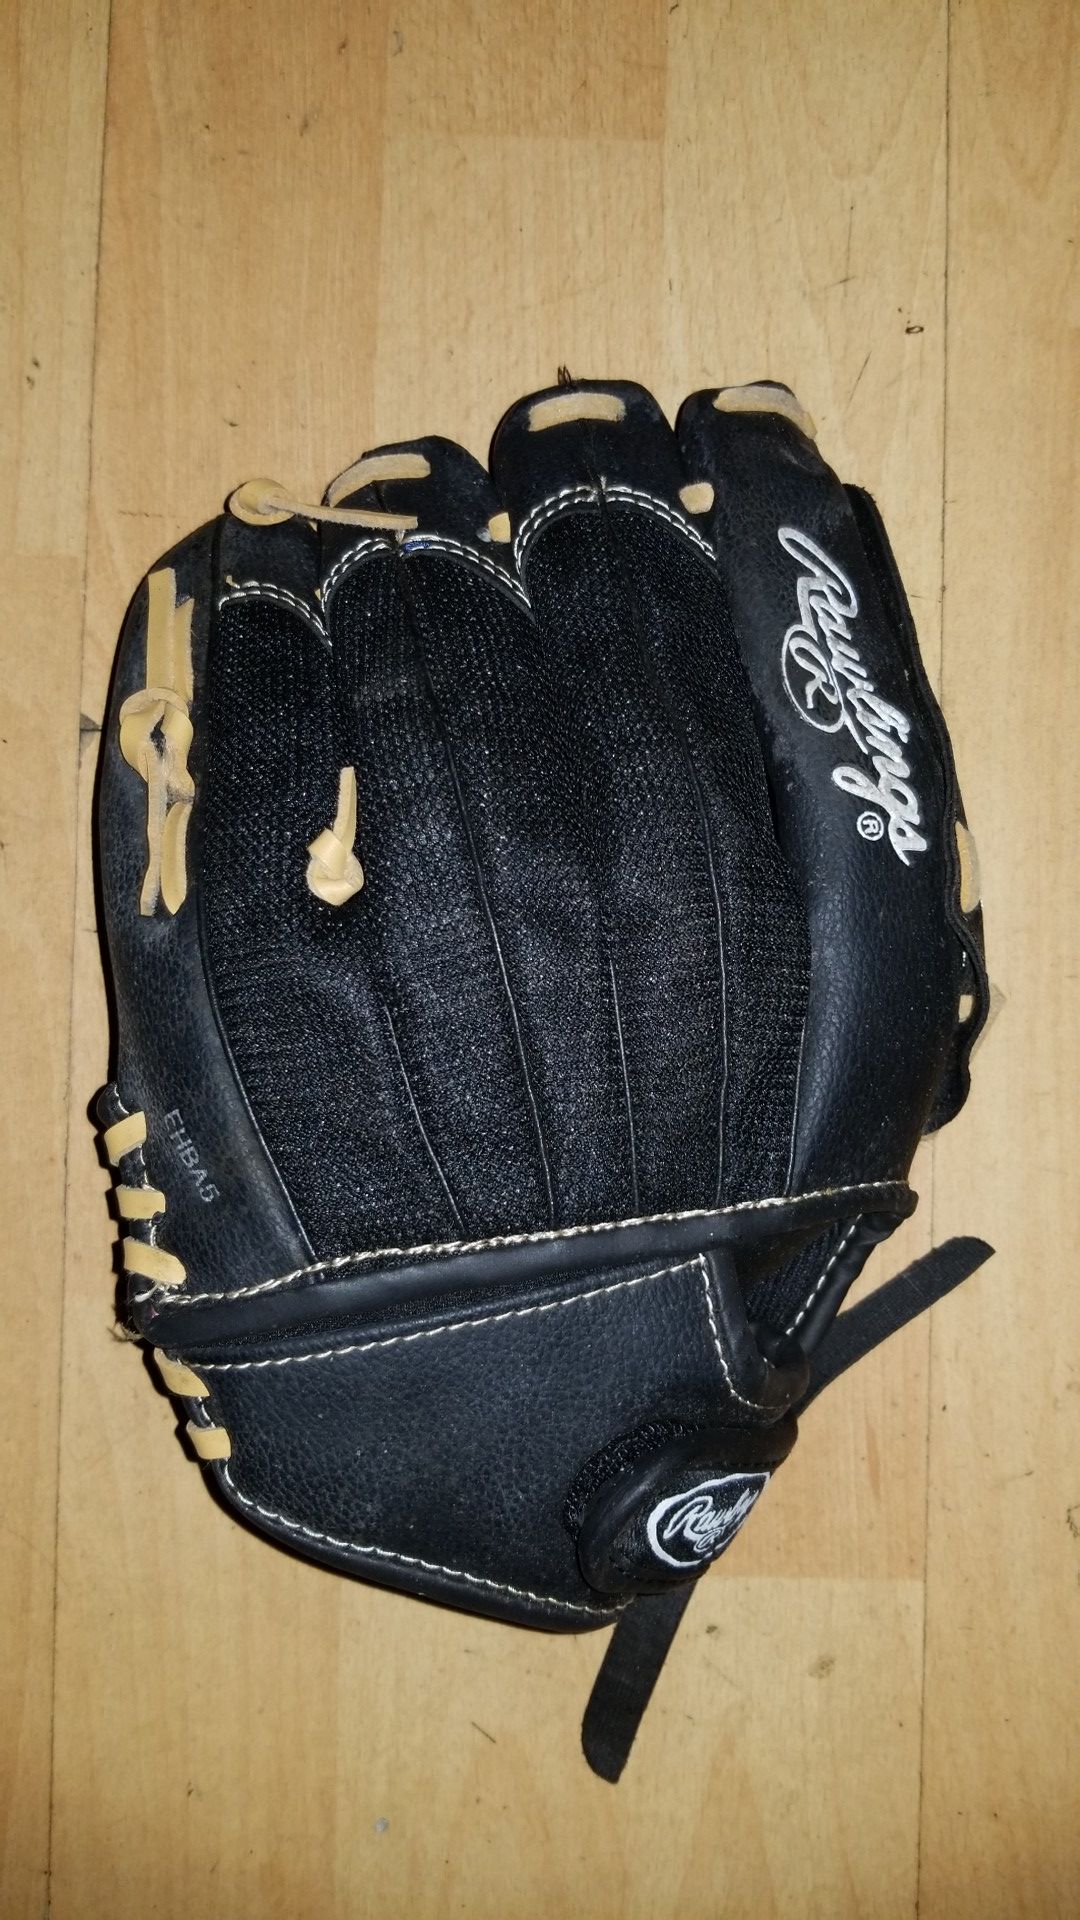 Rawlings 11inch Baseball Glove